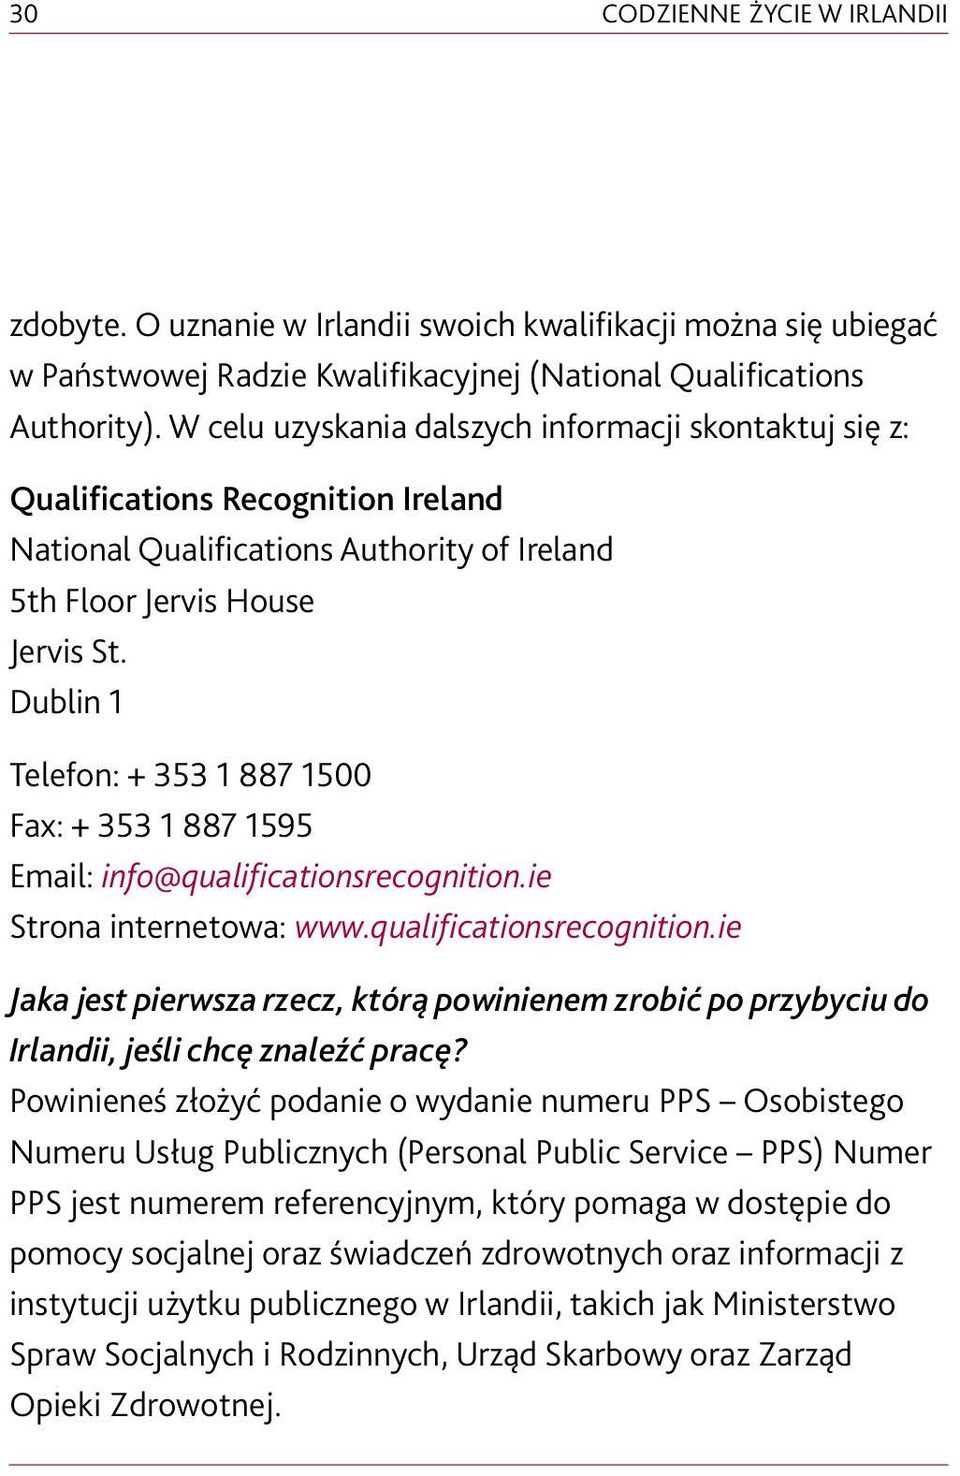 Dublin 1 Telefon: + 353 1 887 1500 Fax: + 353 1 887 1595 Email: info@qualificationsrecognition.ie Strona internetowa: www.qualificationsrecognition.ie Jaka jest pierwsza rzecz, którą powinienem zrobić po przybyciu do Irlandii, jeśli chcę znaleźć pracę?